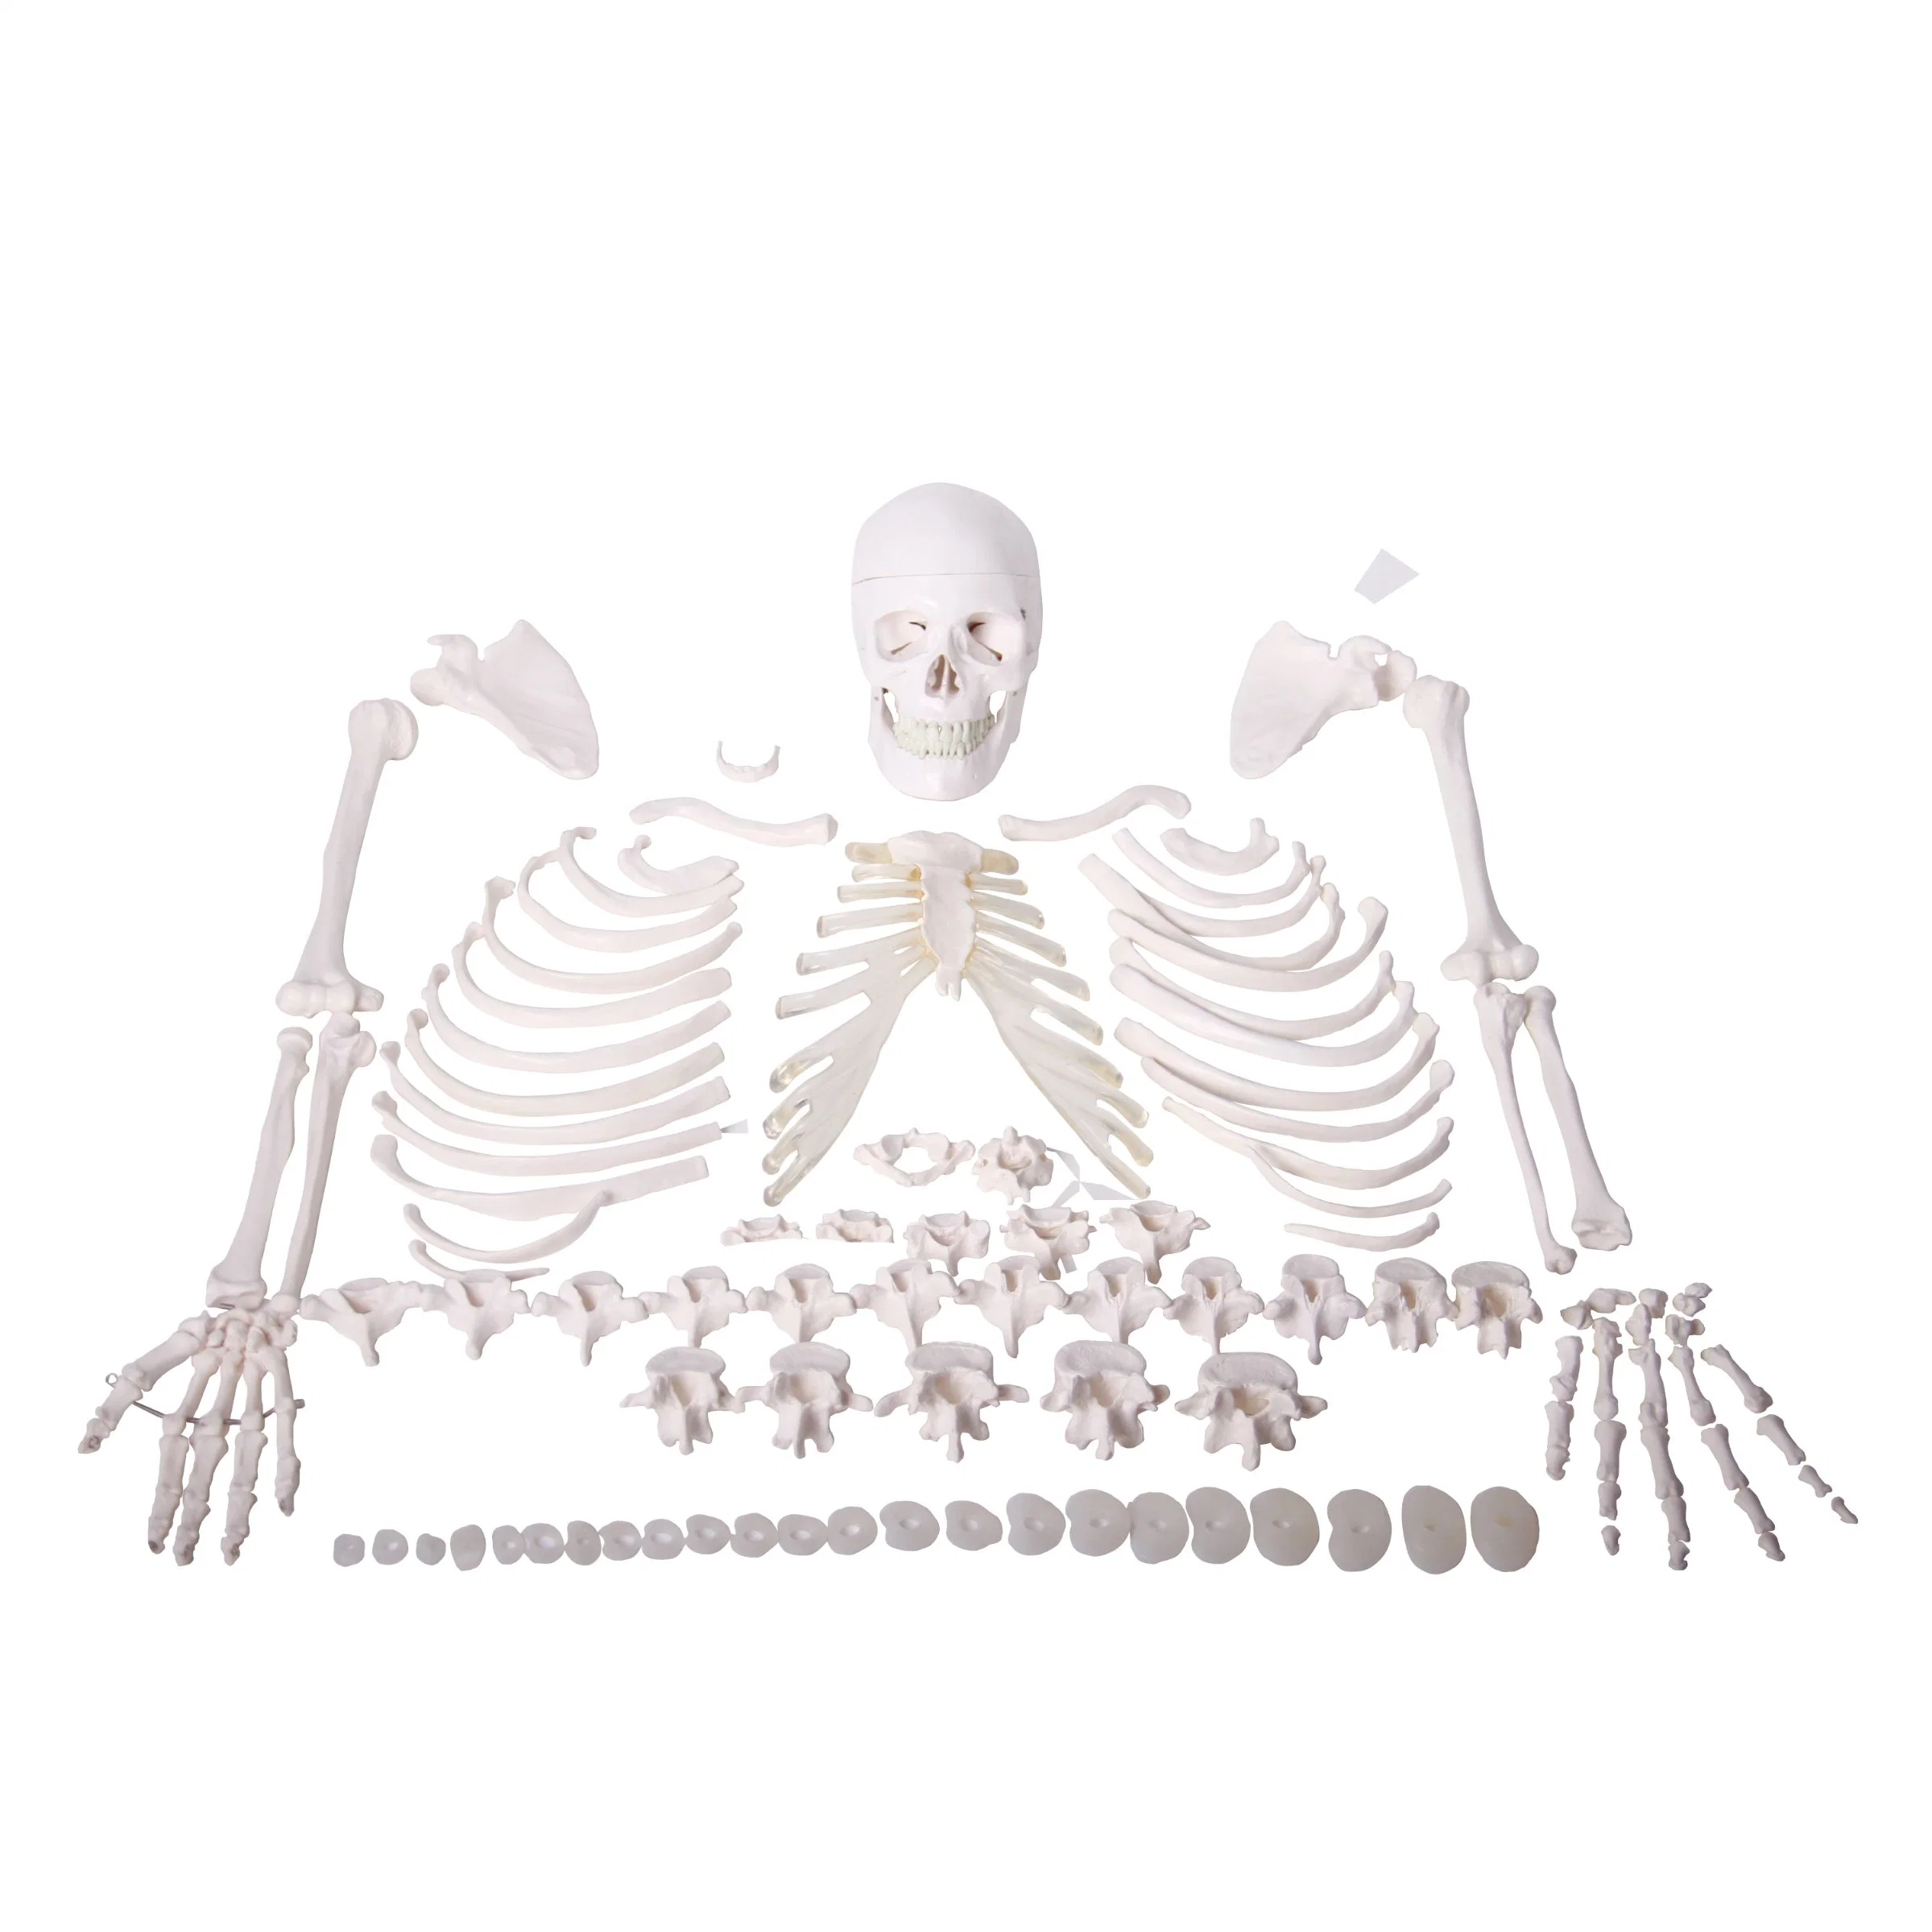 Super Economy Medical 3D modelos 170cm hueso humano de cuerpo entero Modelo Skull Skeleton desarticulado